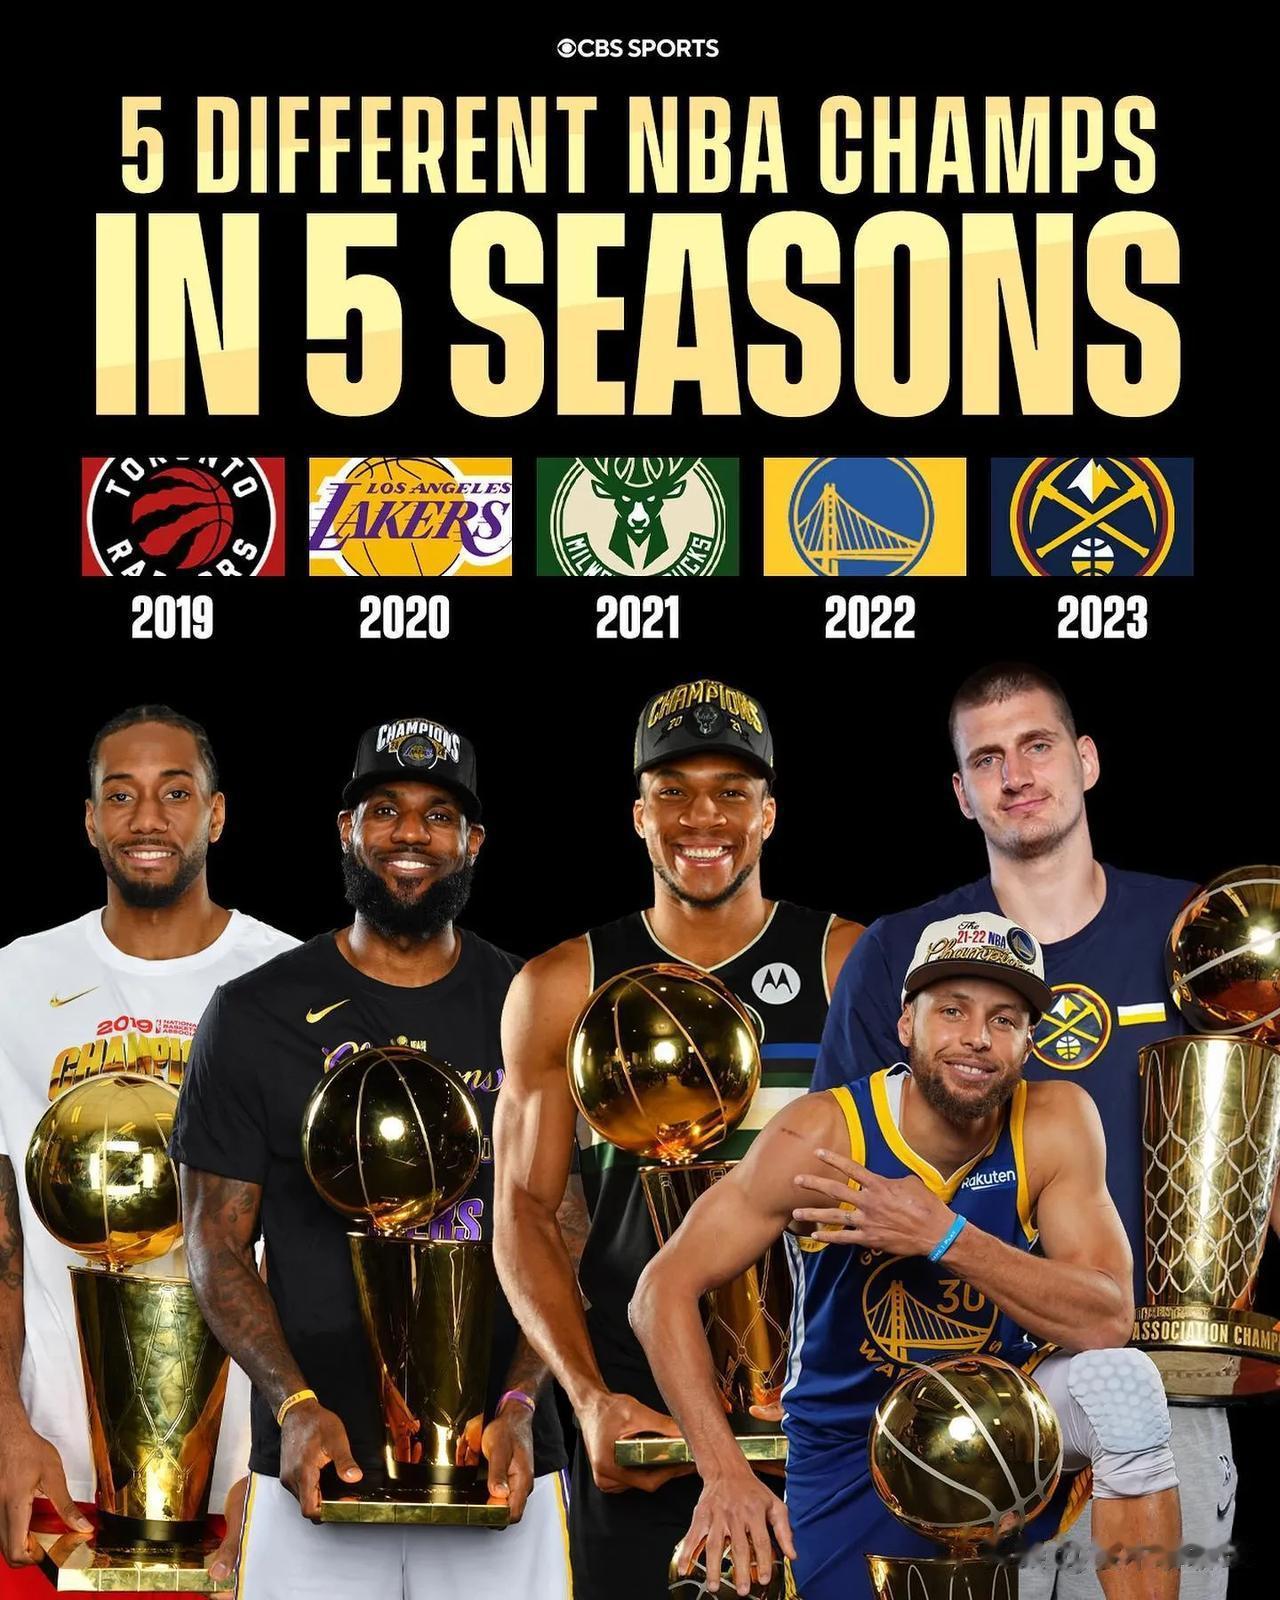 报团时代结束！近5年冠军没有超级三巨头
NBA近5年总冠军:
2019:猛龙
2(1)